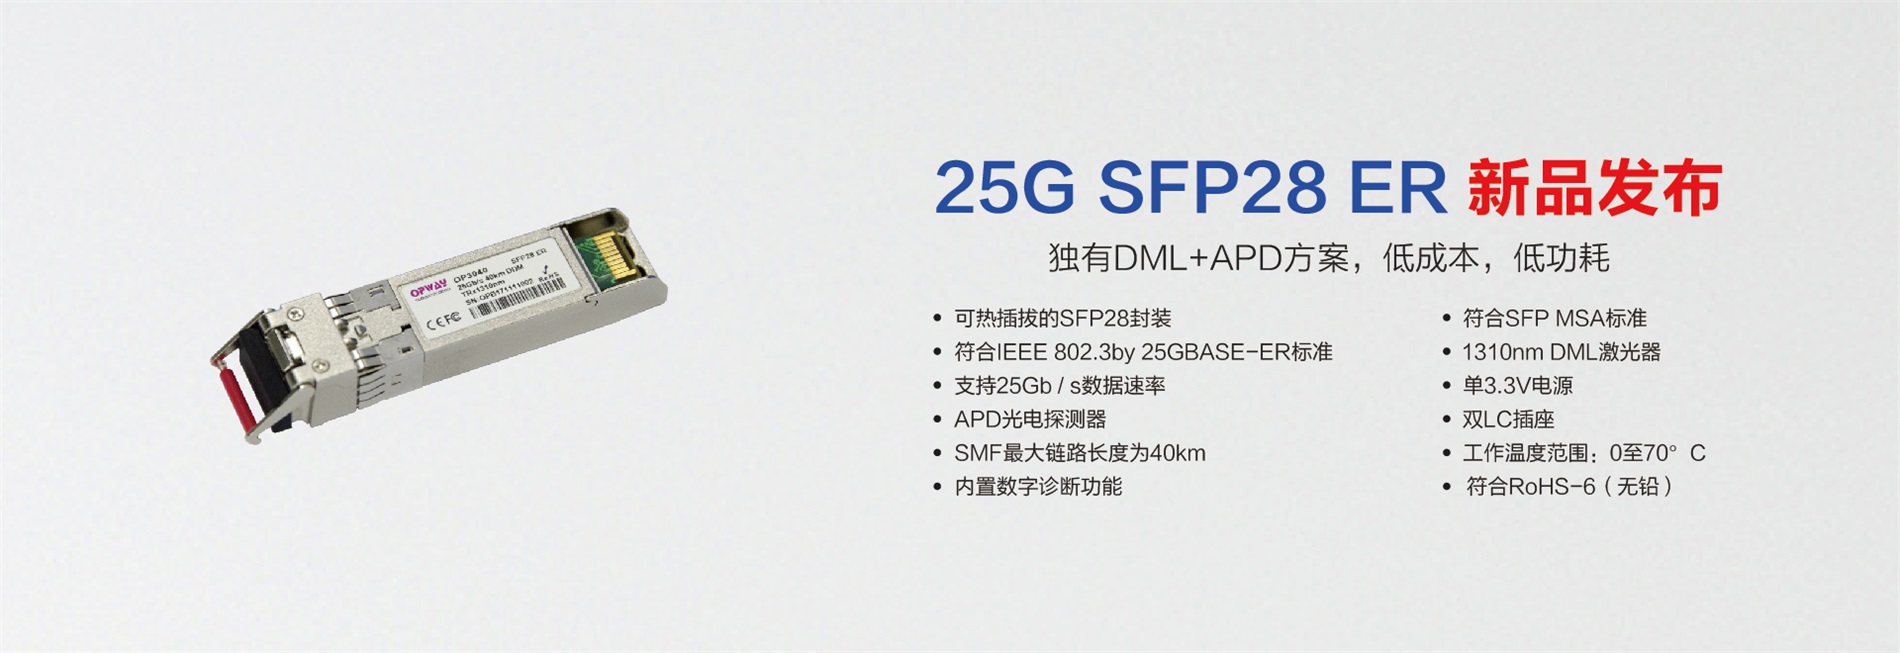 光为推出高性价比SFP28 ER光模块产品